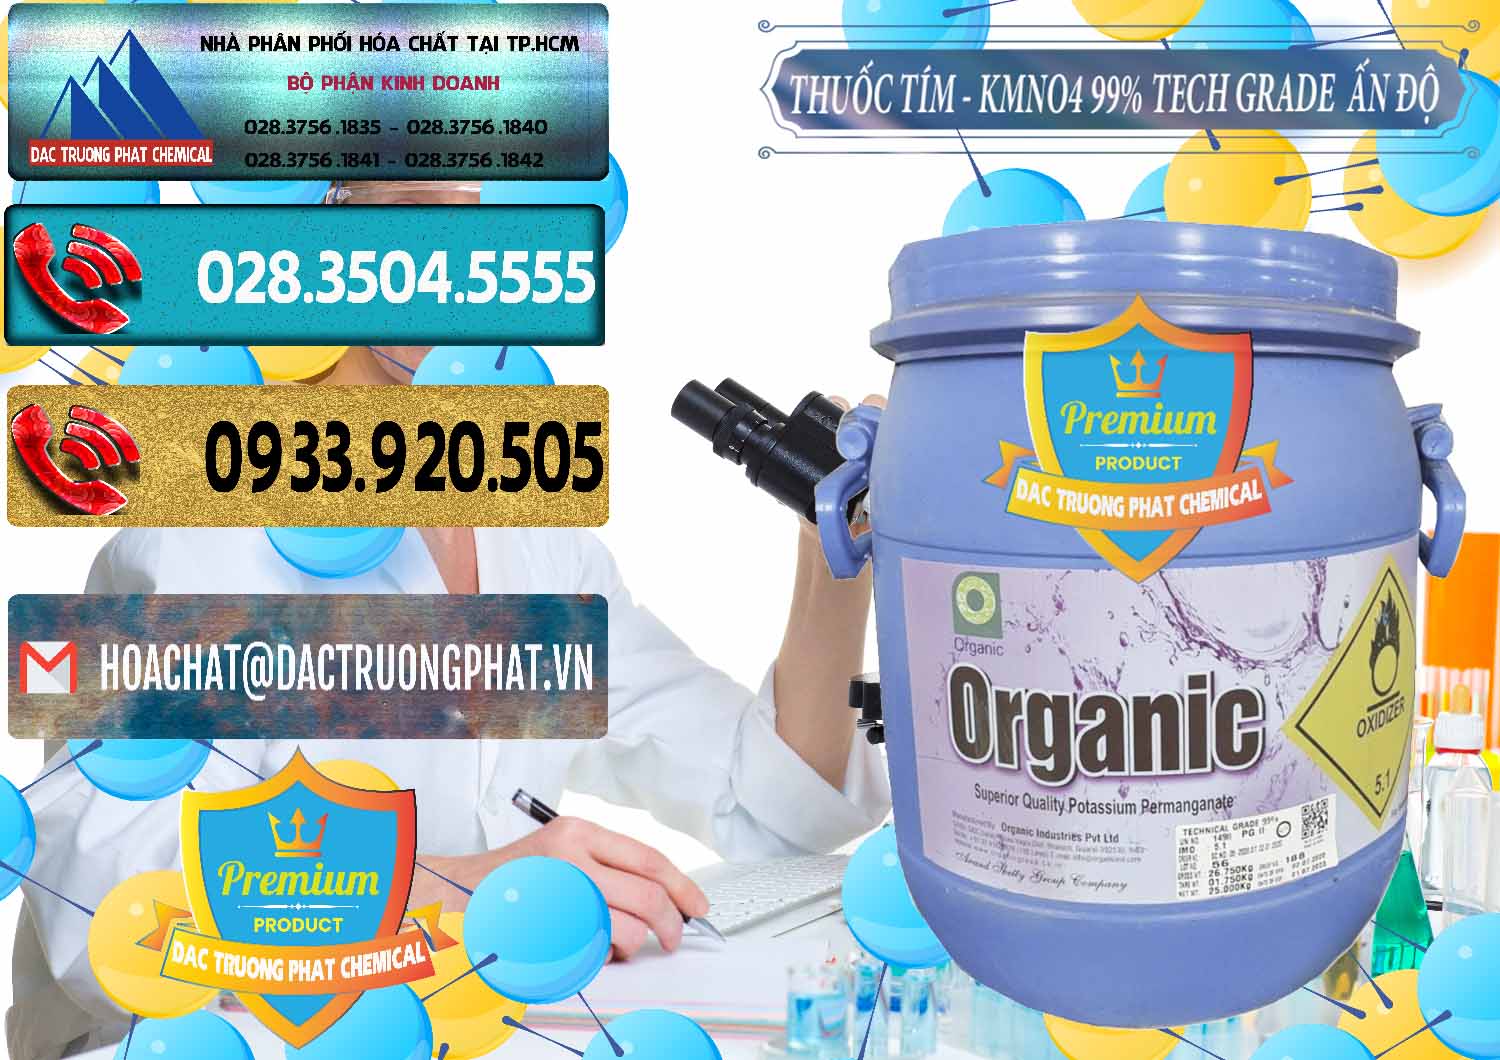 Nơi chuyên nhập khẩu & bán Thuốc Tím - KMNO4 99% Organic Group Ấn Độ India - 0250 - Phân phối - cung cấp hóa chất tại TP.HCM - hoachatdetnhuom.com